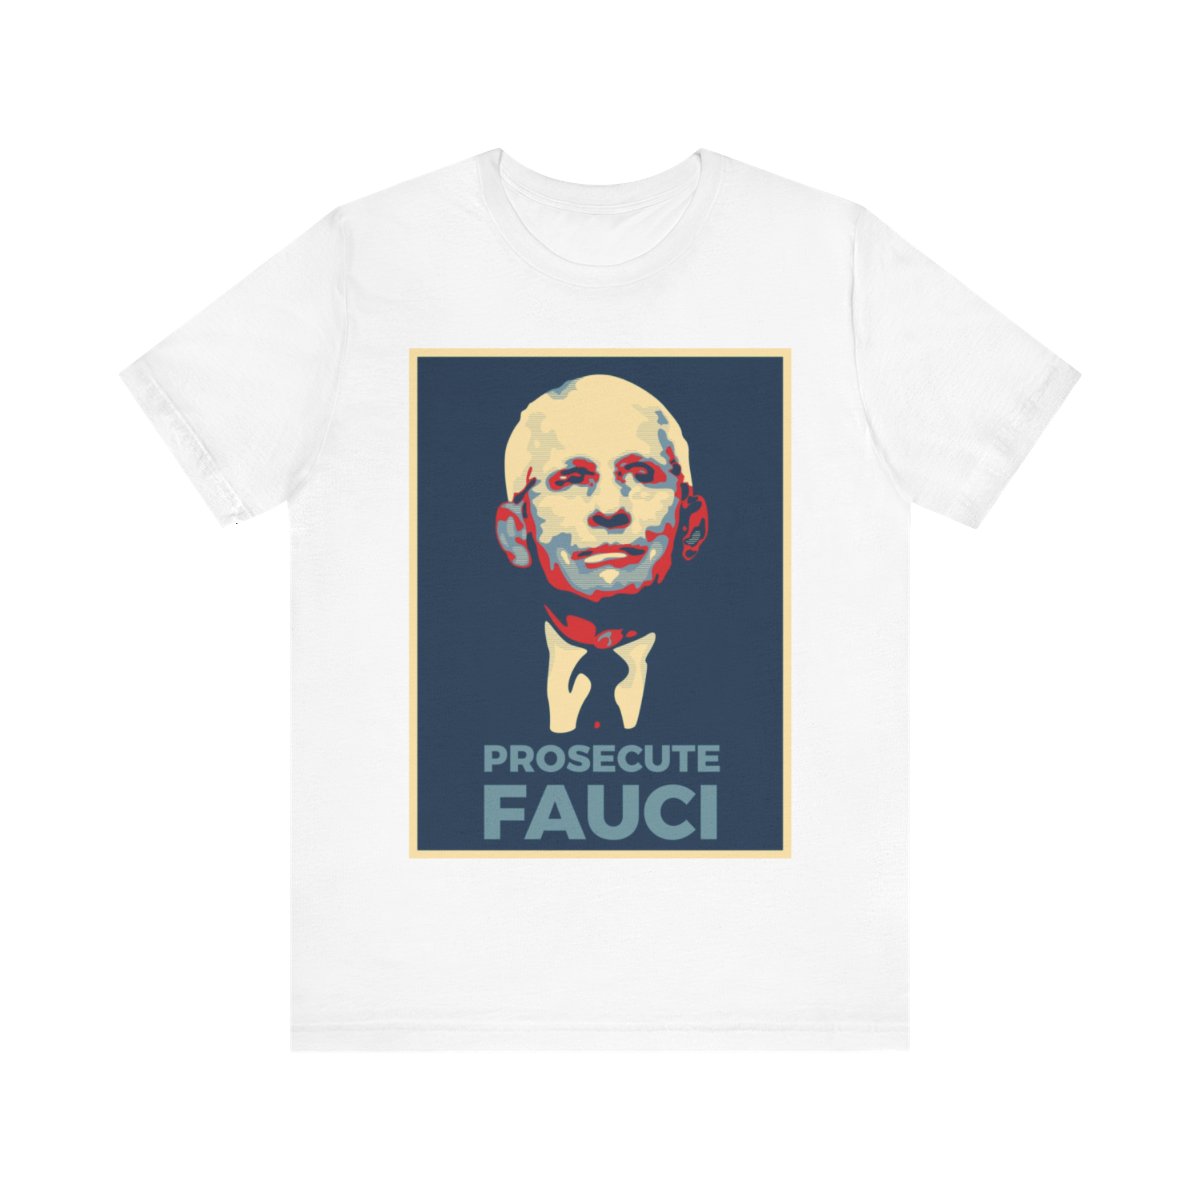 Prosecute Fauci t-shirt product thumbnail image